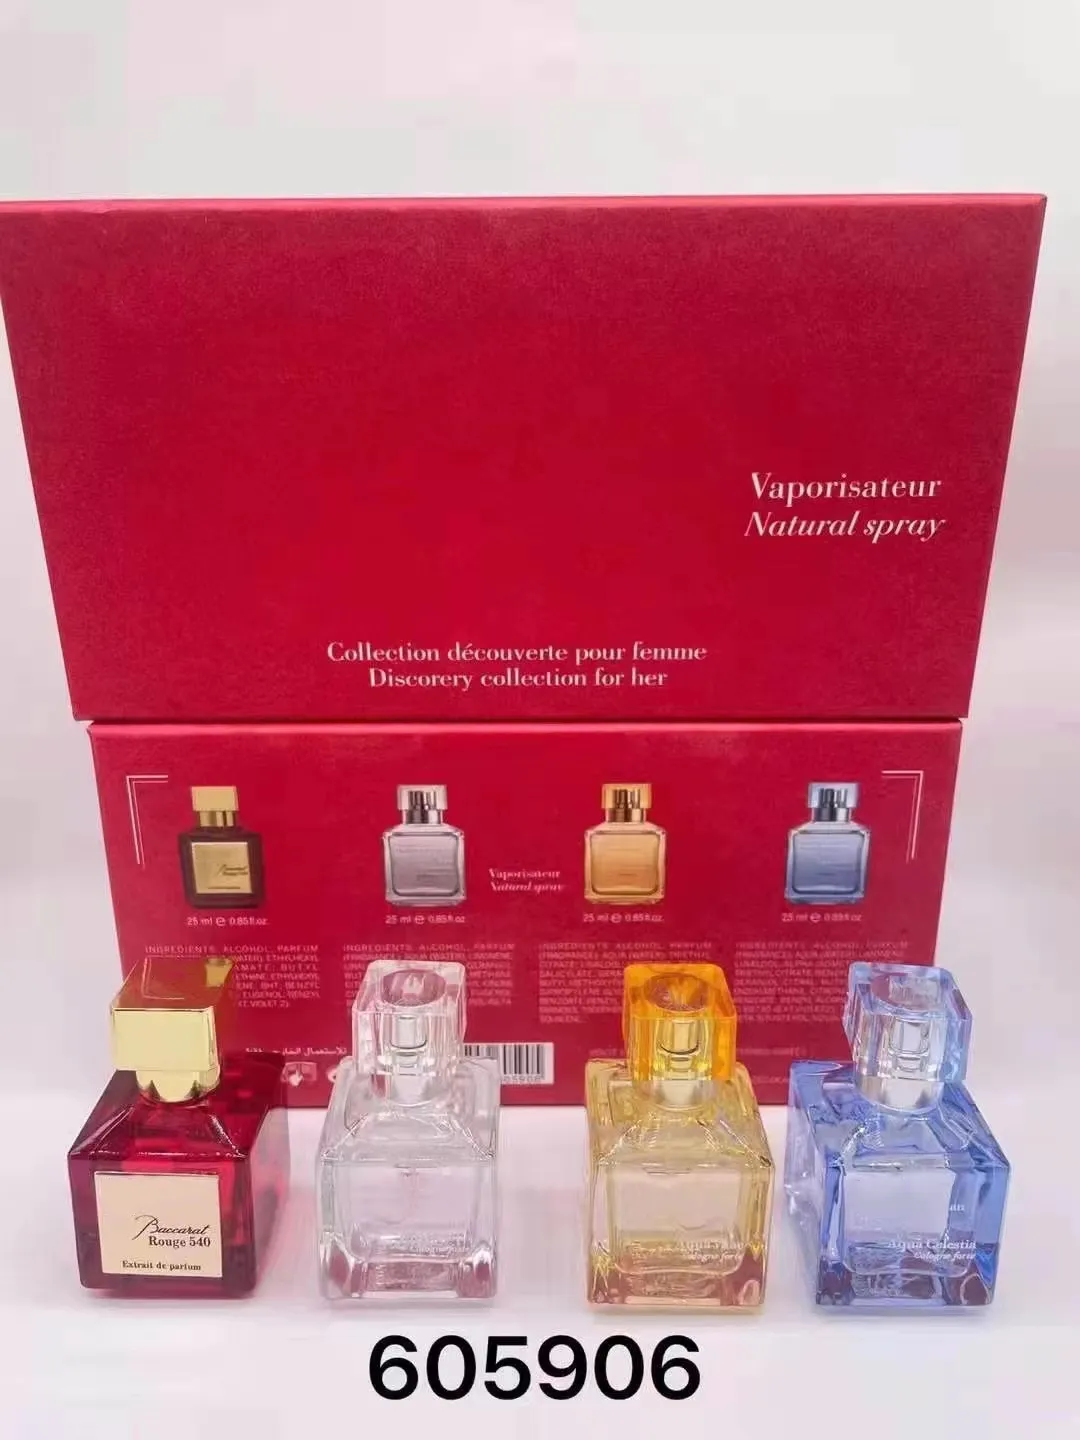 Premierlash Brand Paris Perfume Set 25ml 4pcs Rouge 540 Parfum Parfum Floral Fragrance Mood Extrait Long Laving Spray Spray Gift Box 4 в 1 Высокое качество